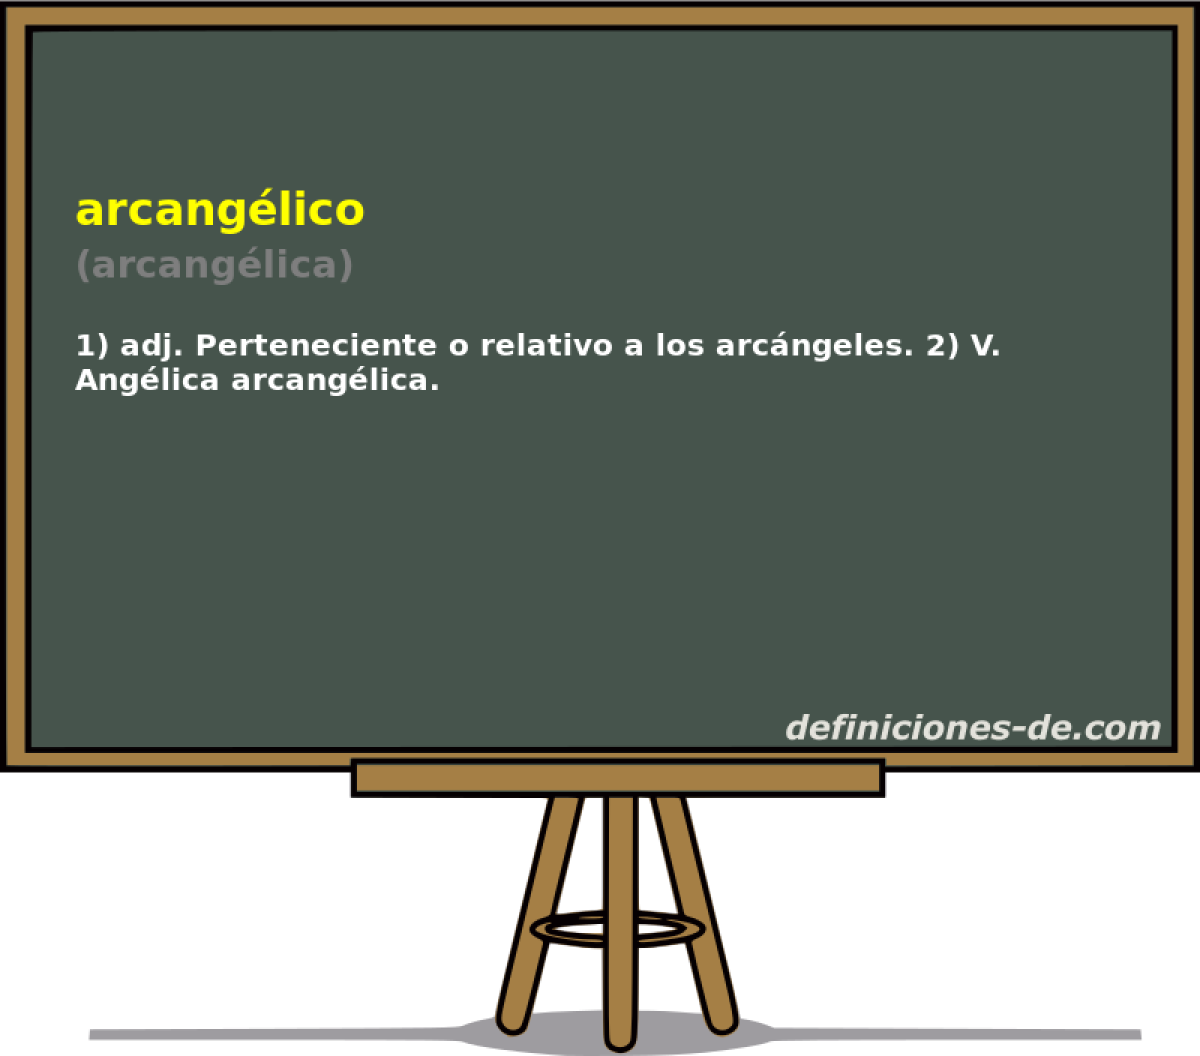 arcanglico (arcanglica)